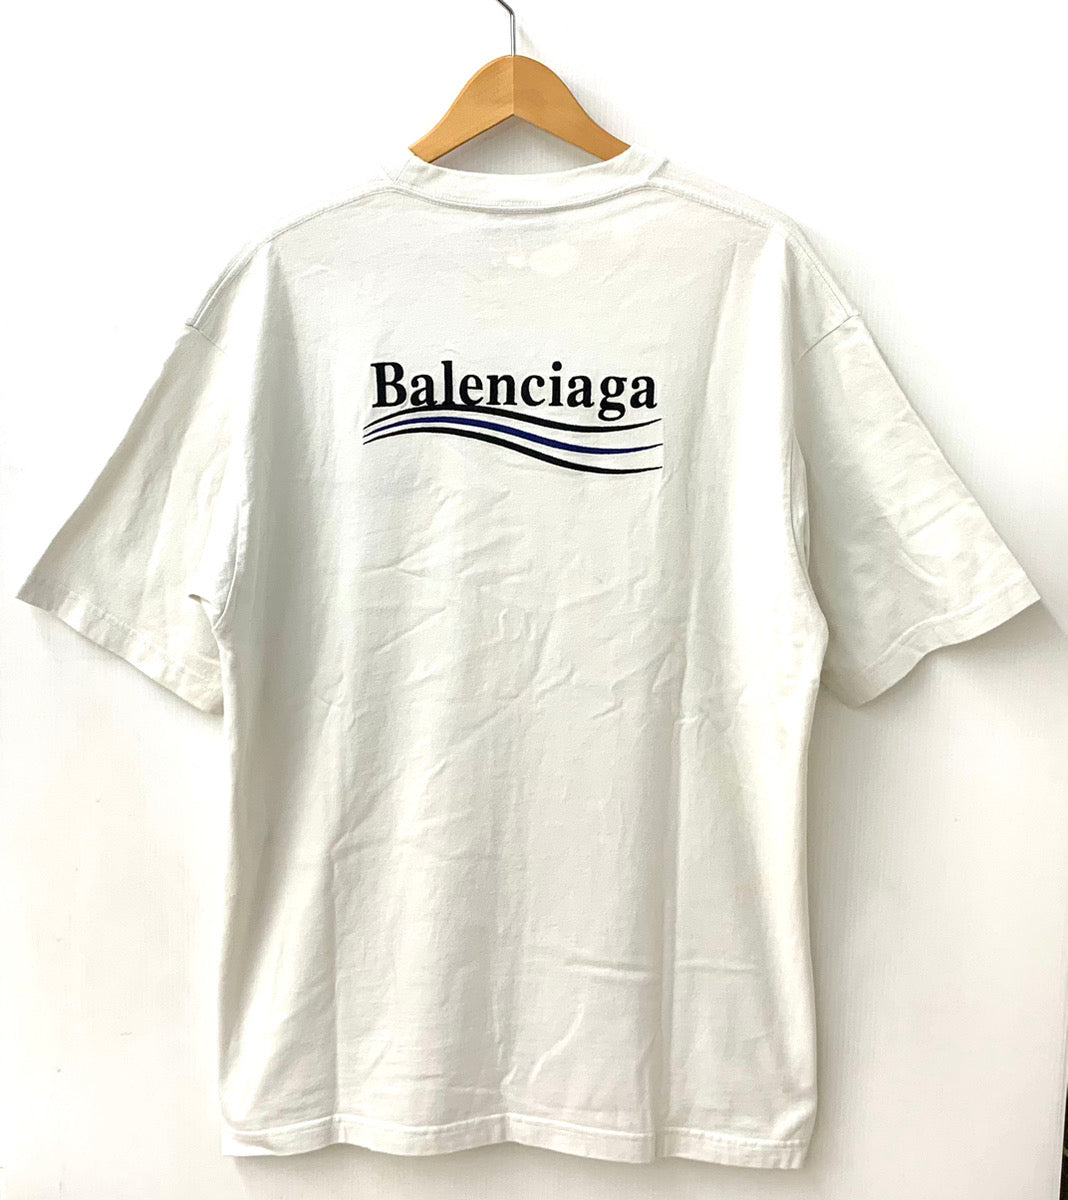 バレンシアガ BALENCIAGA キャンペーンロゴ Tシャツ 641675 TKVJ1 9084